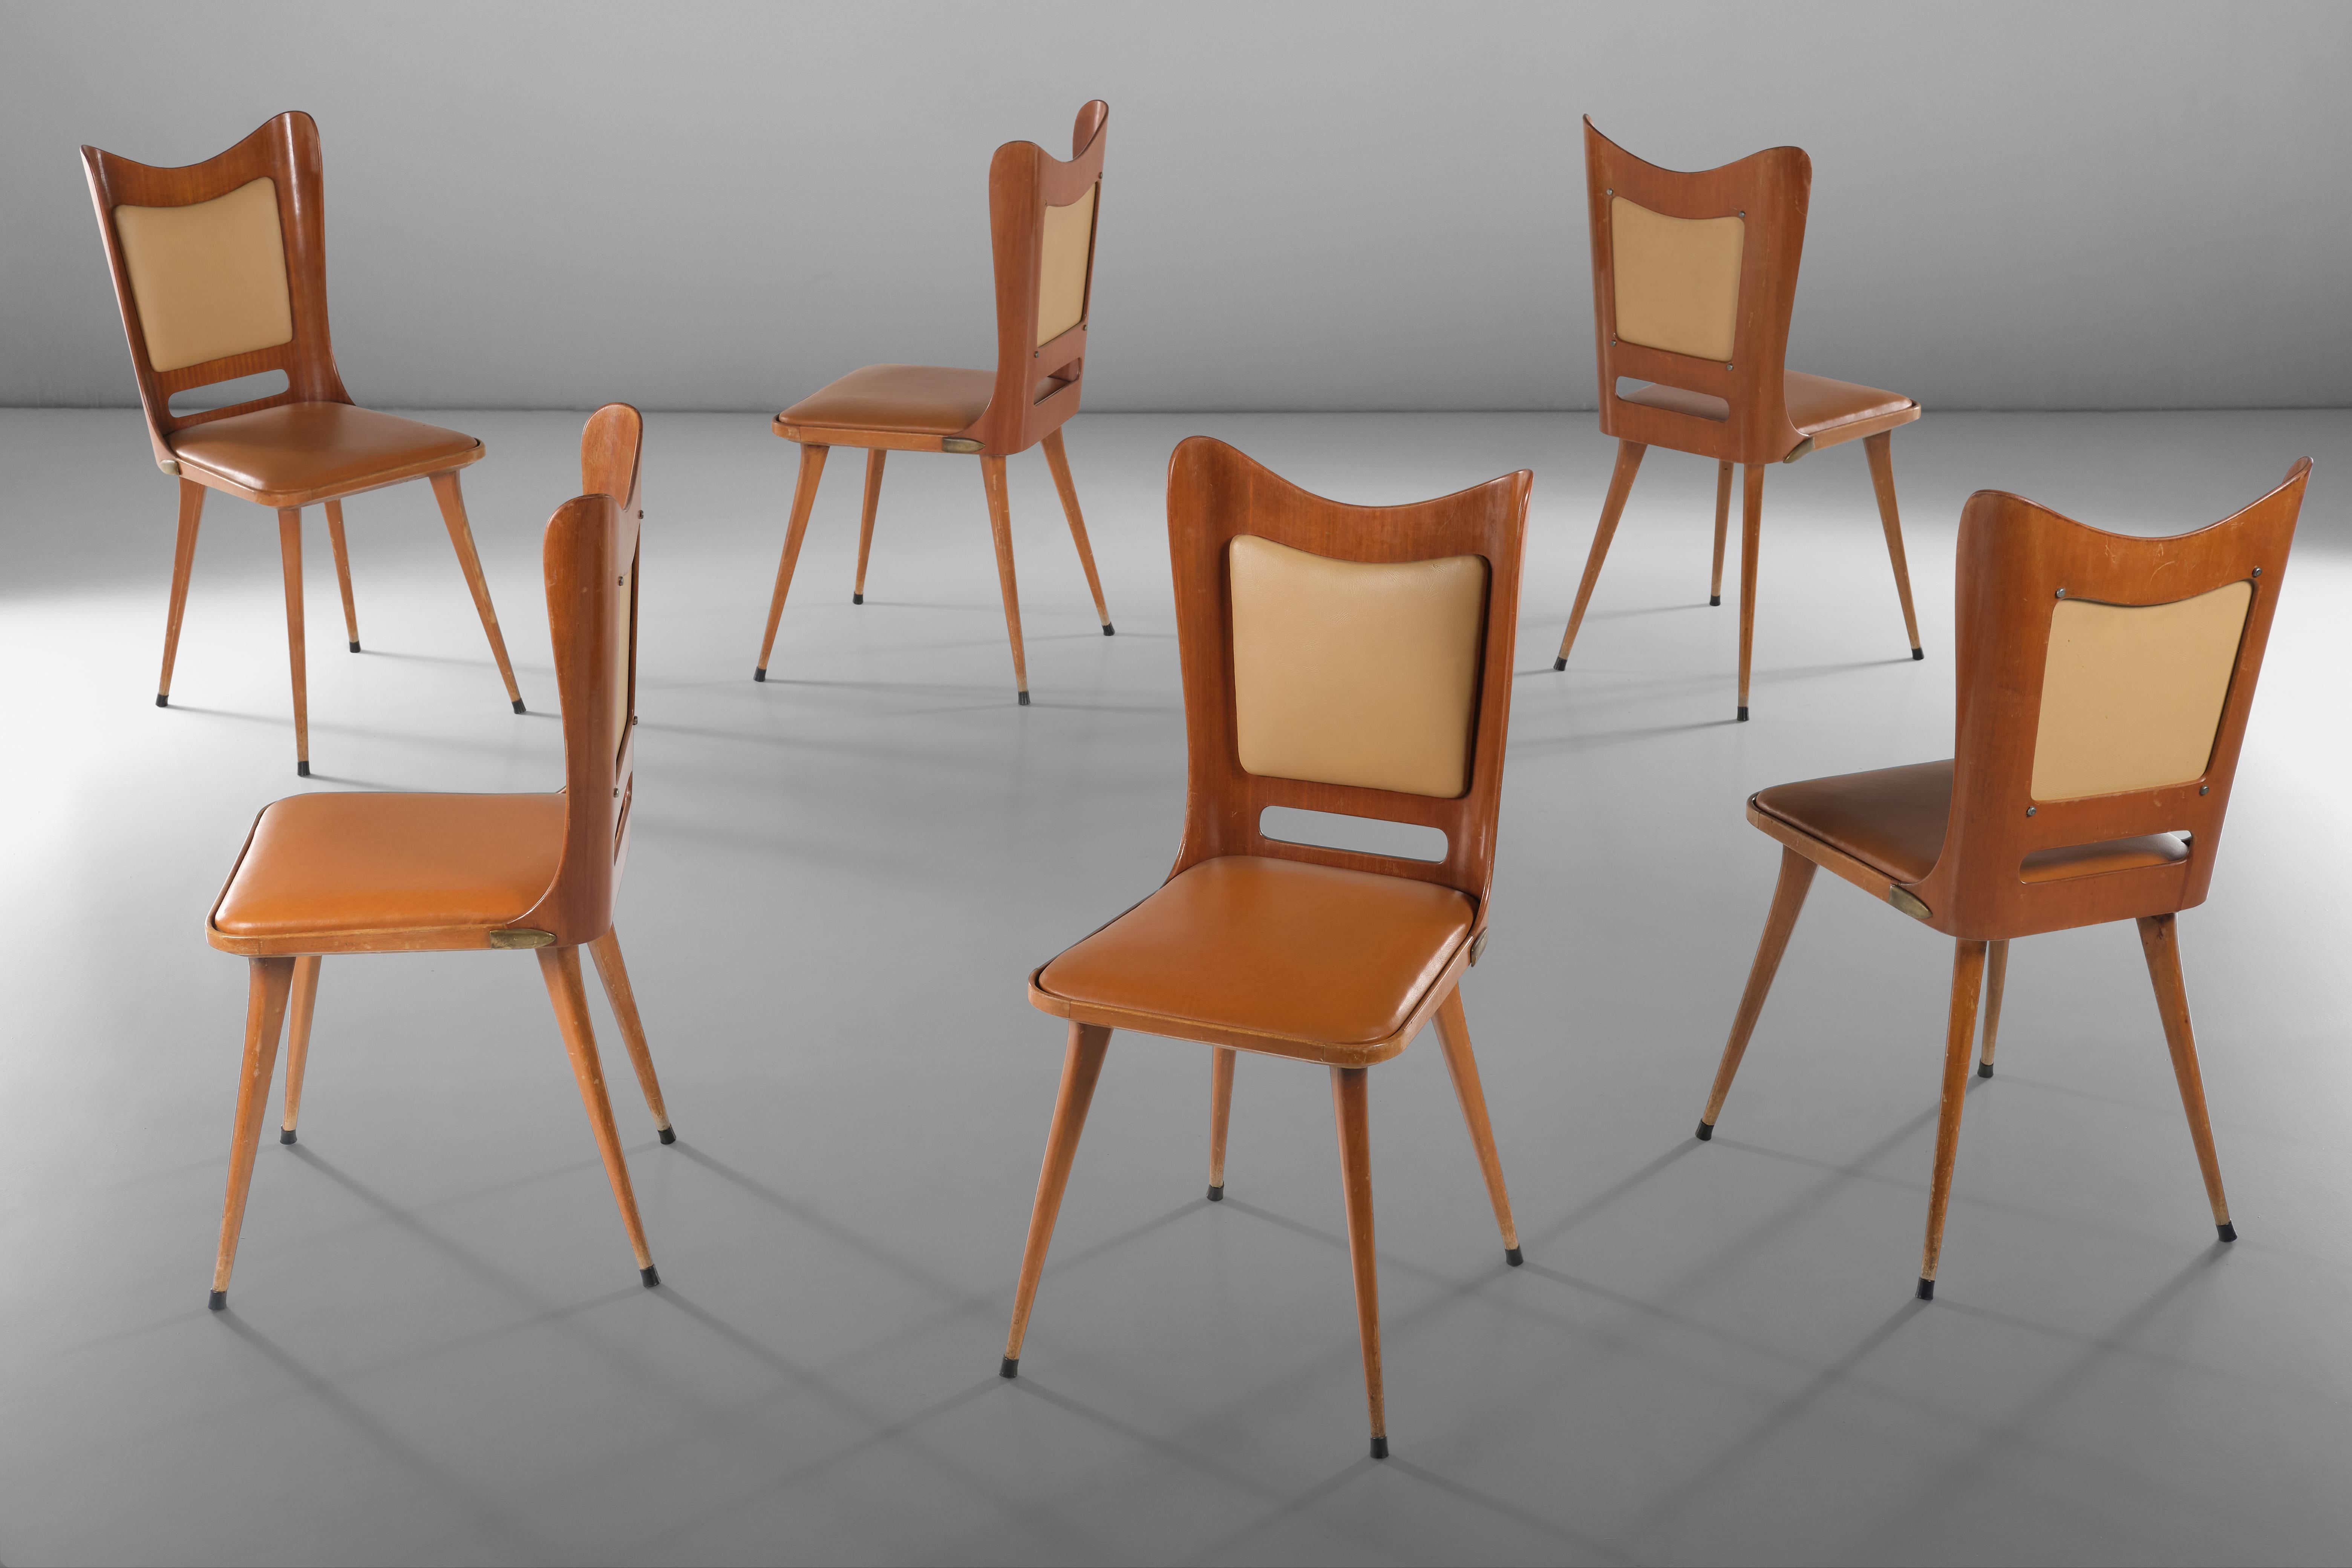 Un ensemble simple mais rare et classique issu de l'artisanat italien d'après-guerre, cet ensemble de six chaises présente une structure en bois et en contreplaqué incurvé, combinée dans un jeu de lignes qui allège et intrigue l'ensemble de la